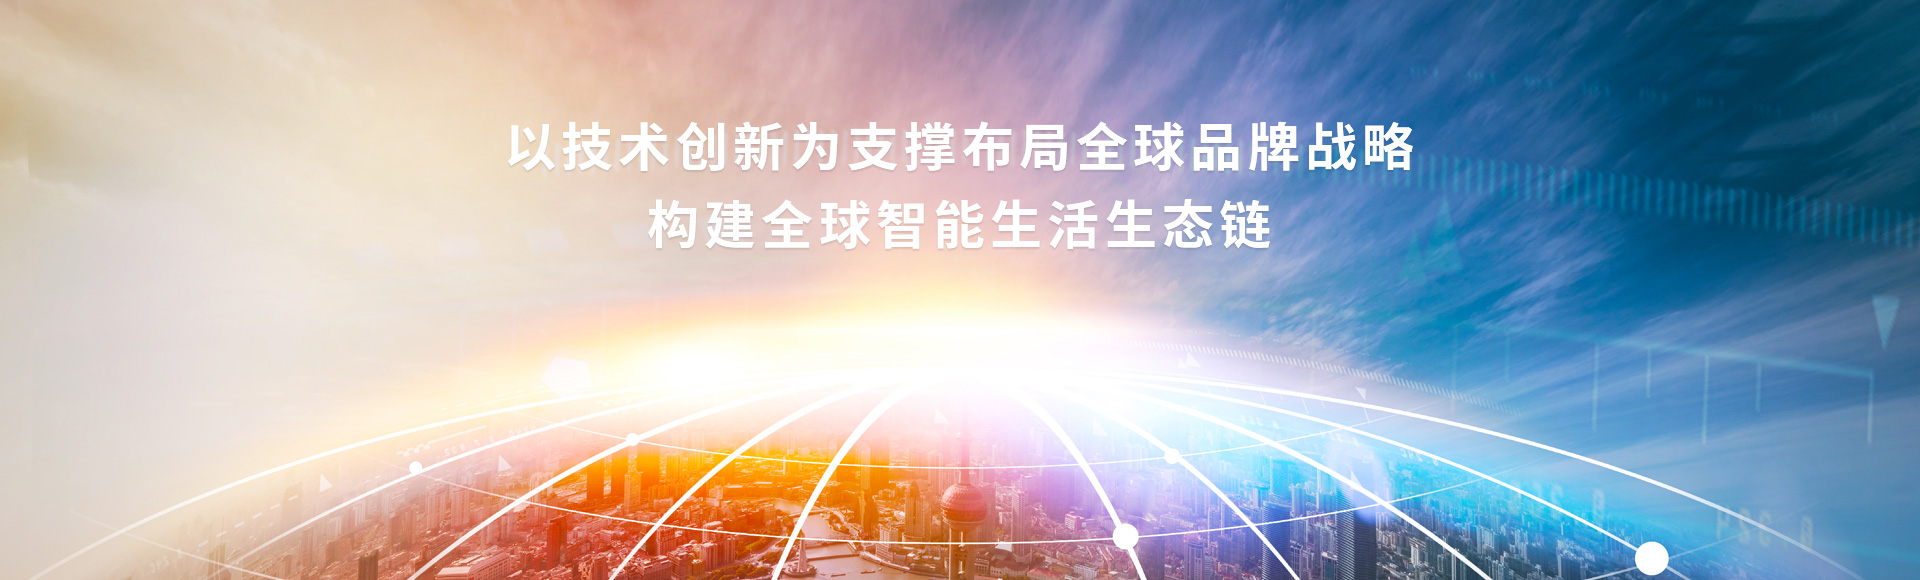 易品牌与深圳华智技术集团达成合作